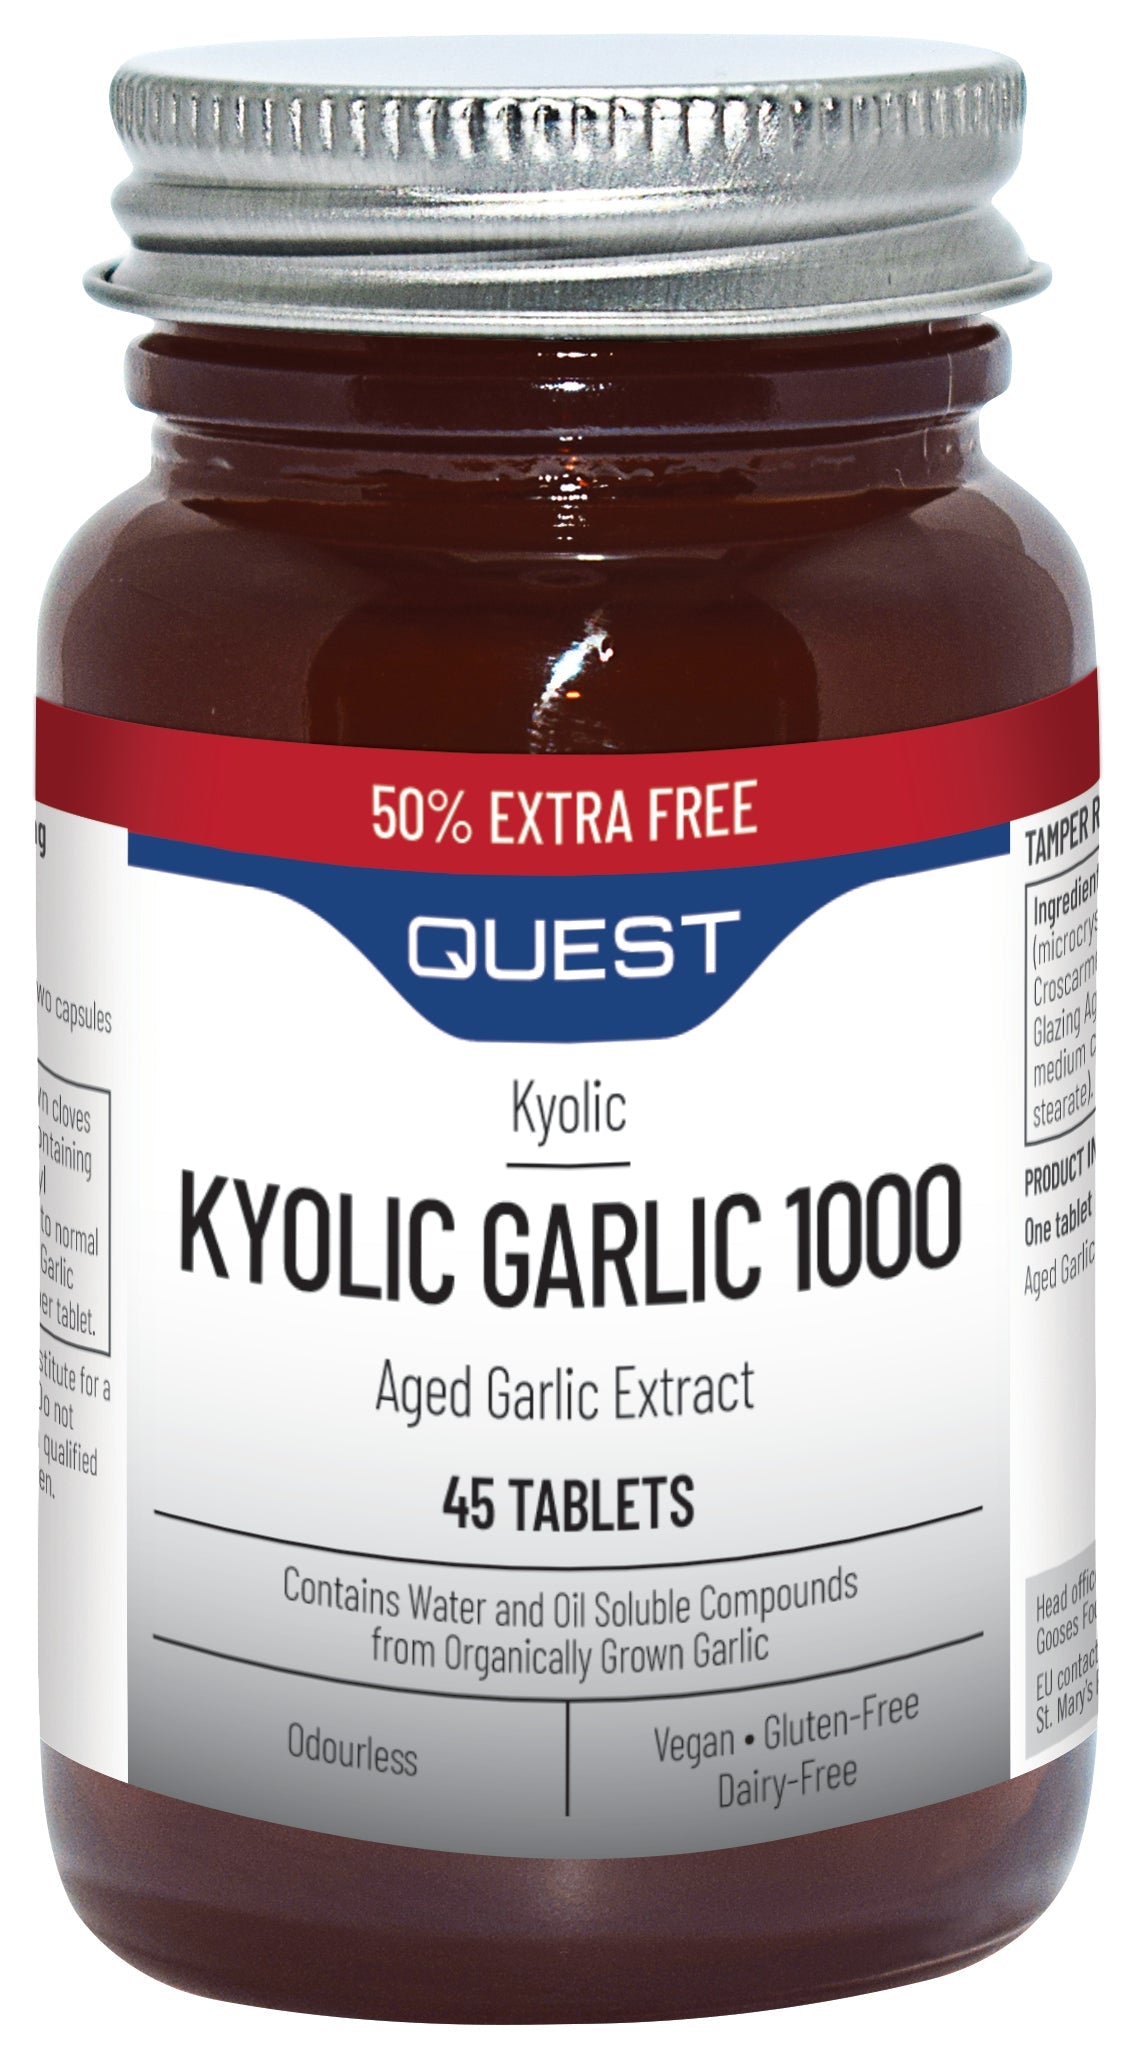 Kyolic Garlic 1000mg 50% Xtra 40795B